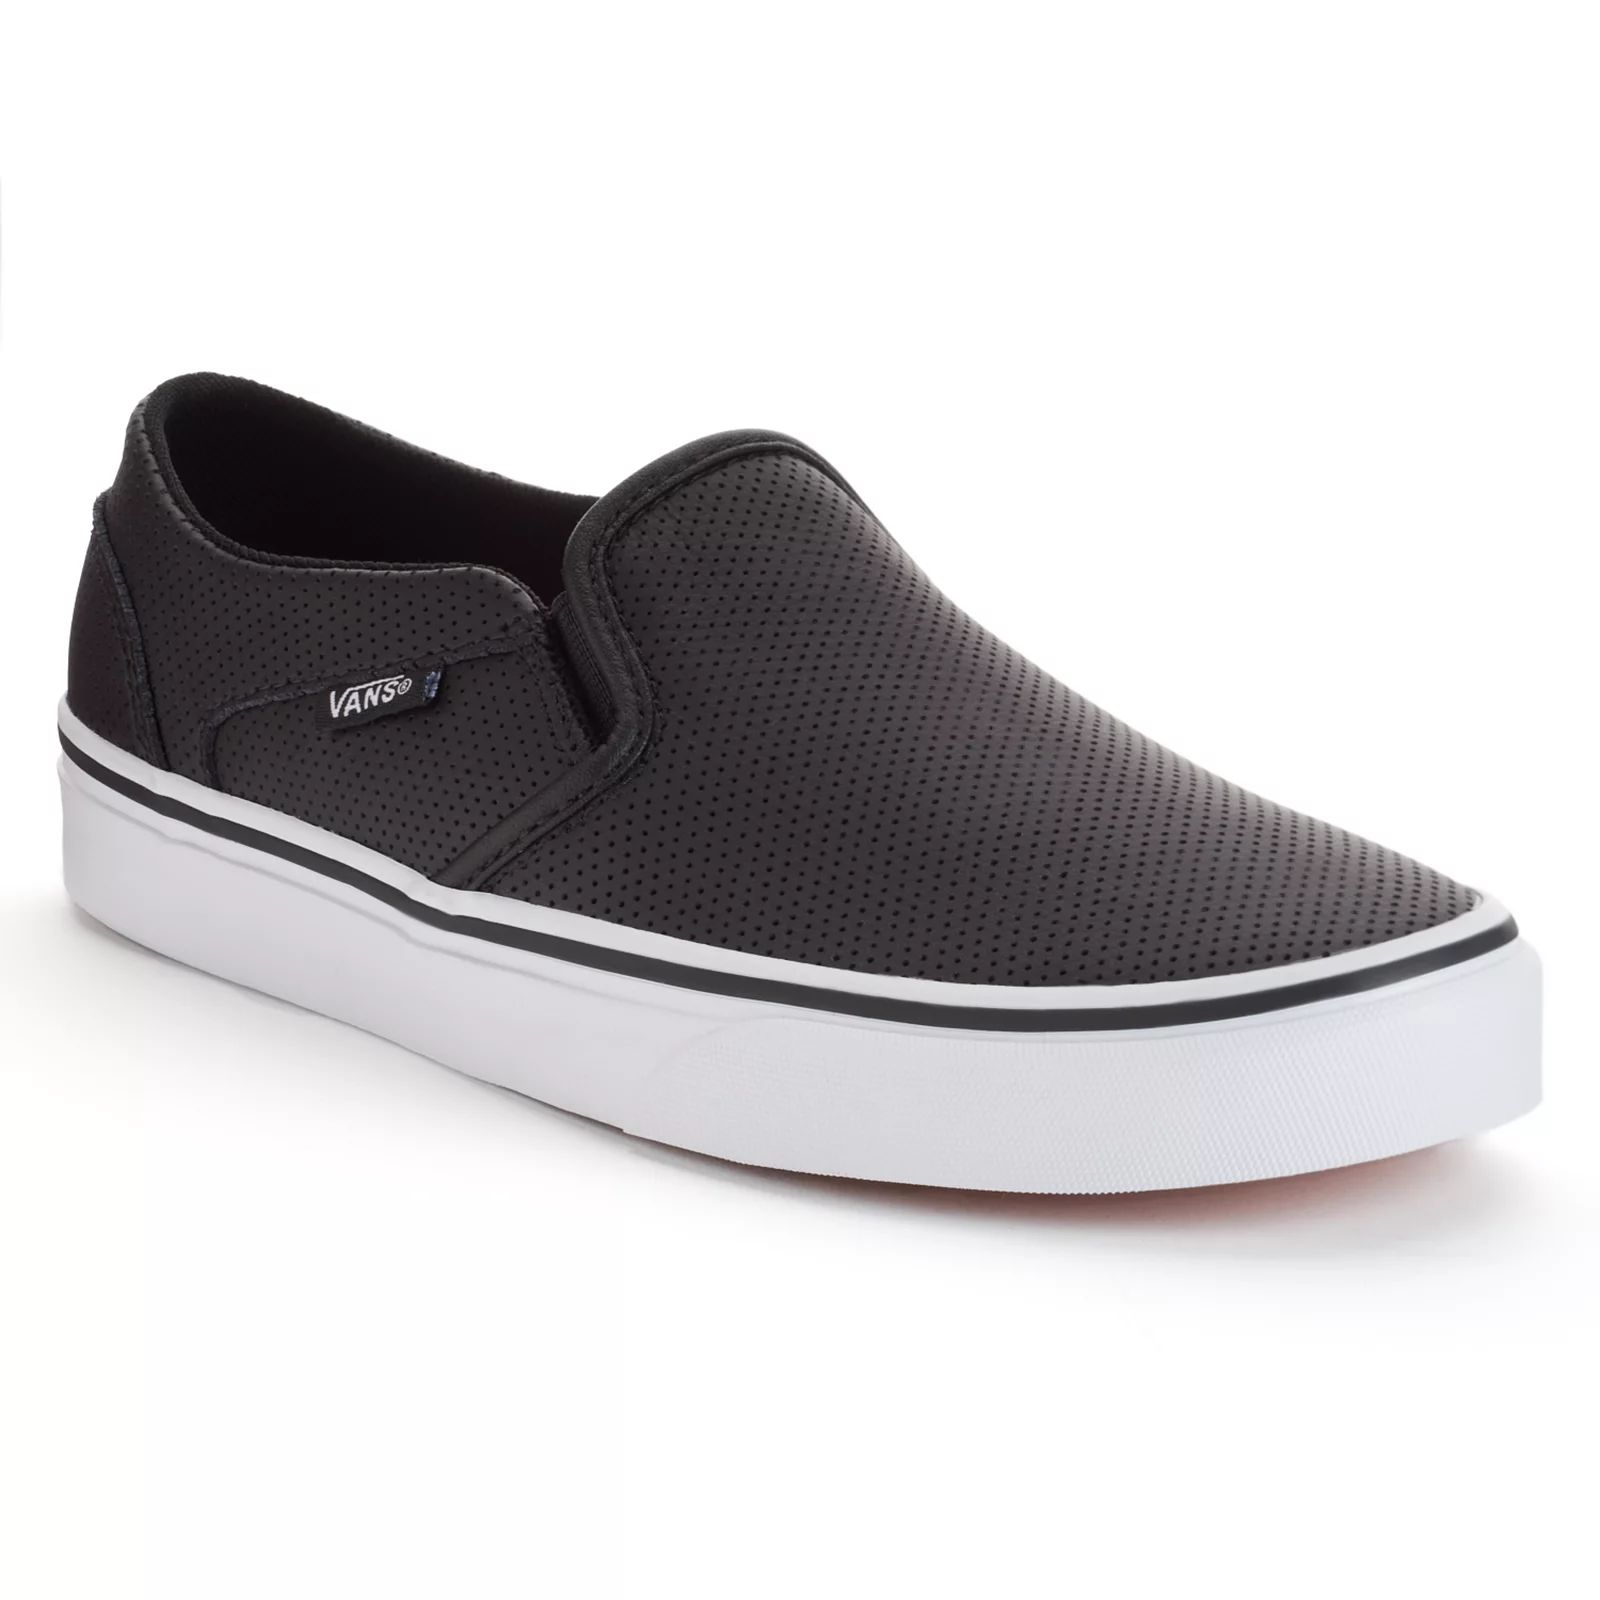 Vans Asher Women's Perforated Slip-On Skate Shoes, Size: 6, Black | Kohl's